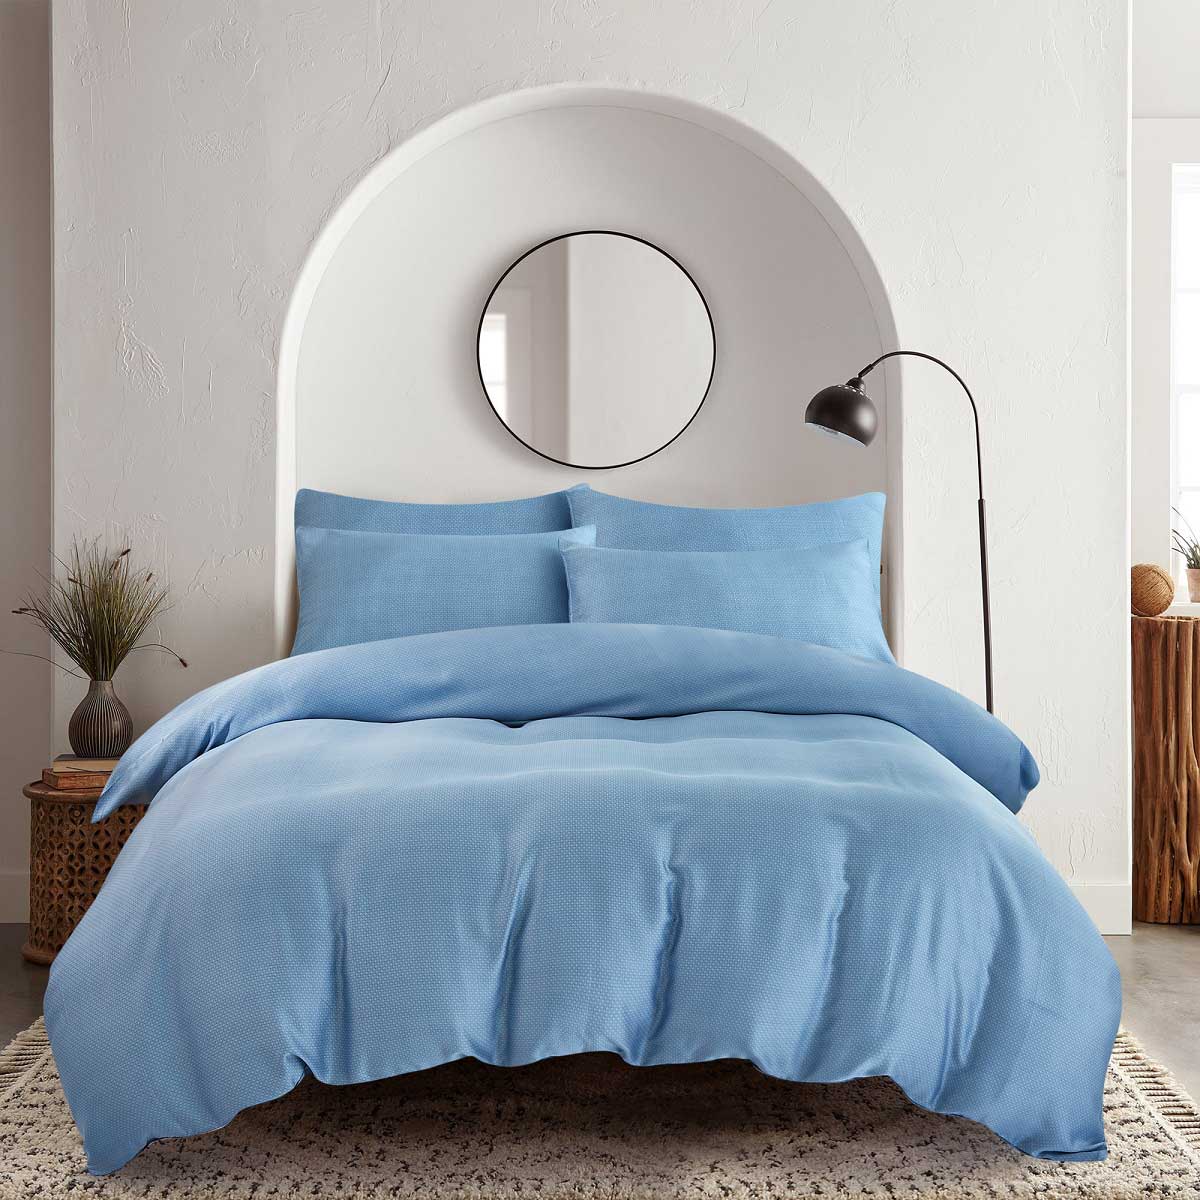 Комплект постельного белья 1,5-спальный Pappel smooth blue комплект постельного белья семейный pappel leaves on blue